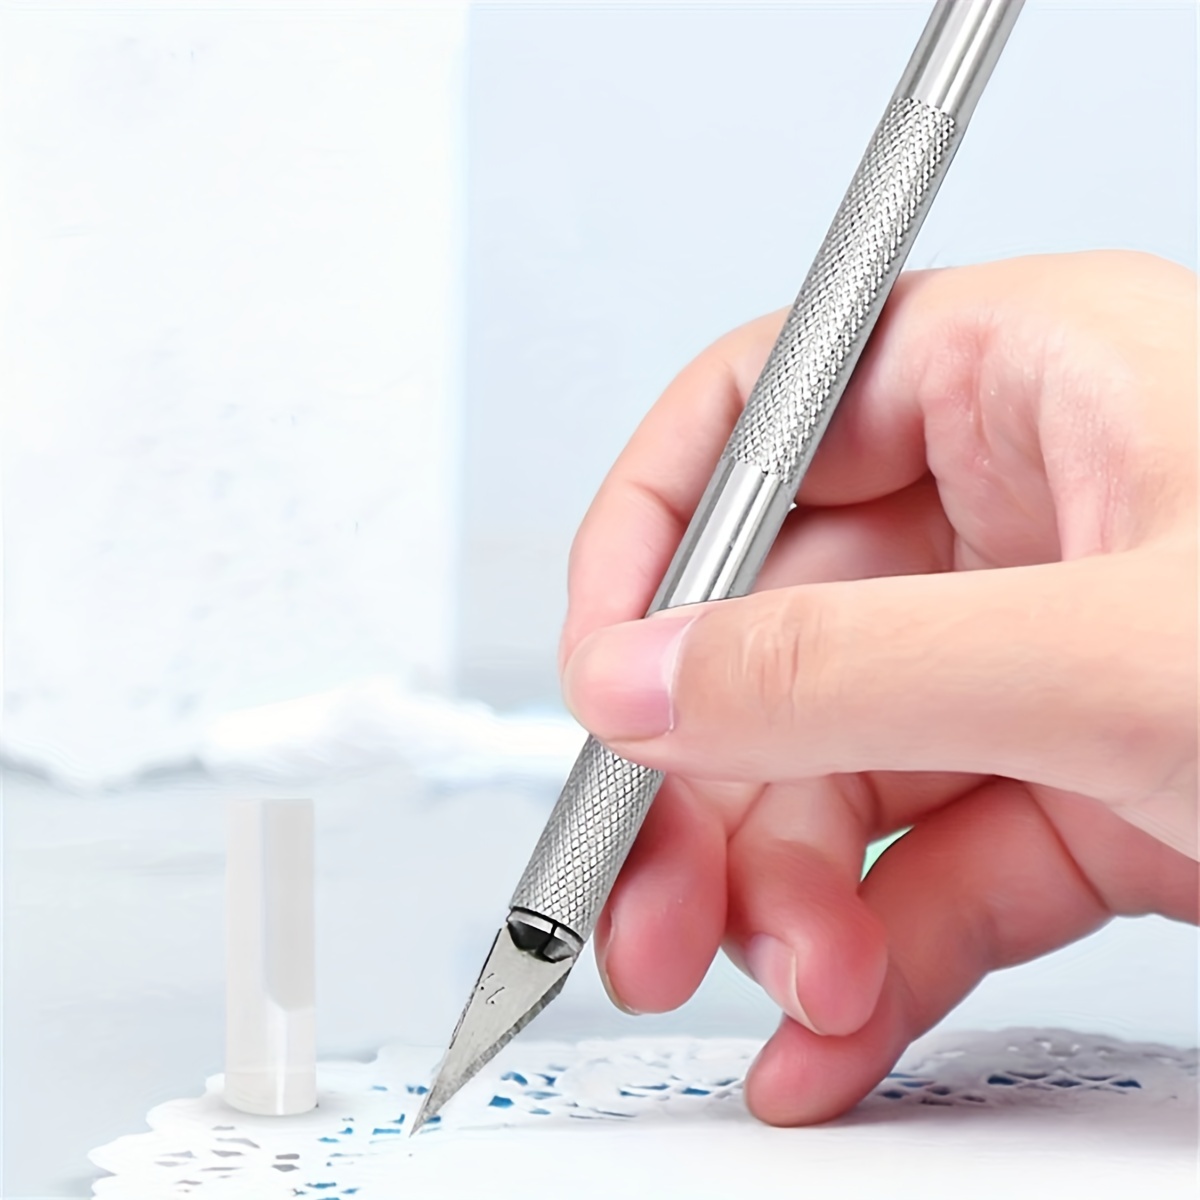  Colarr 8 Pcs Diamond Painting Tool Knife Pen Paper